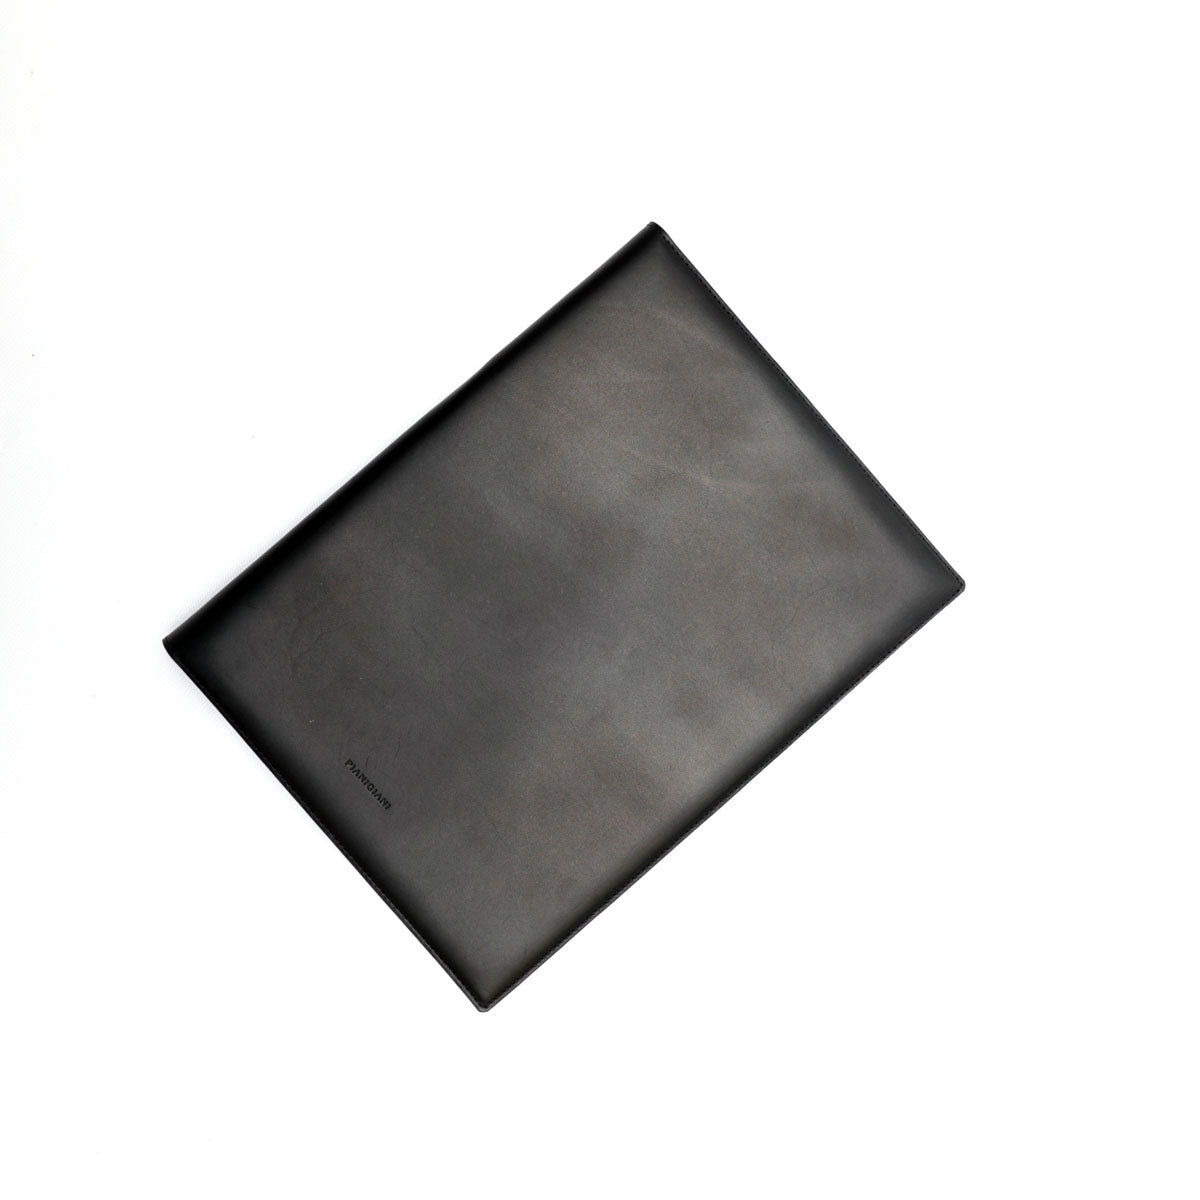 Portablocco formato A4 in pelle liscia nera. Prodotto a mano da Pianigiani bags